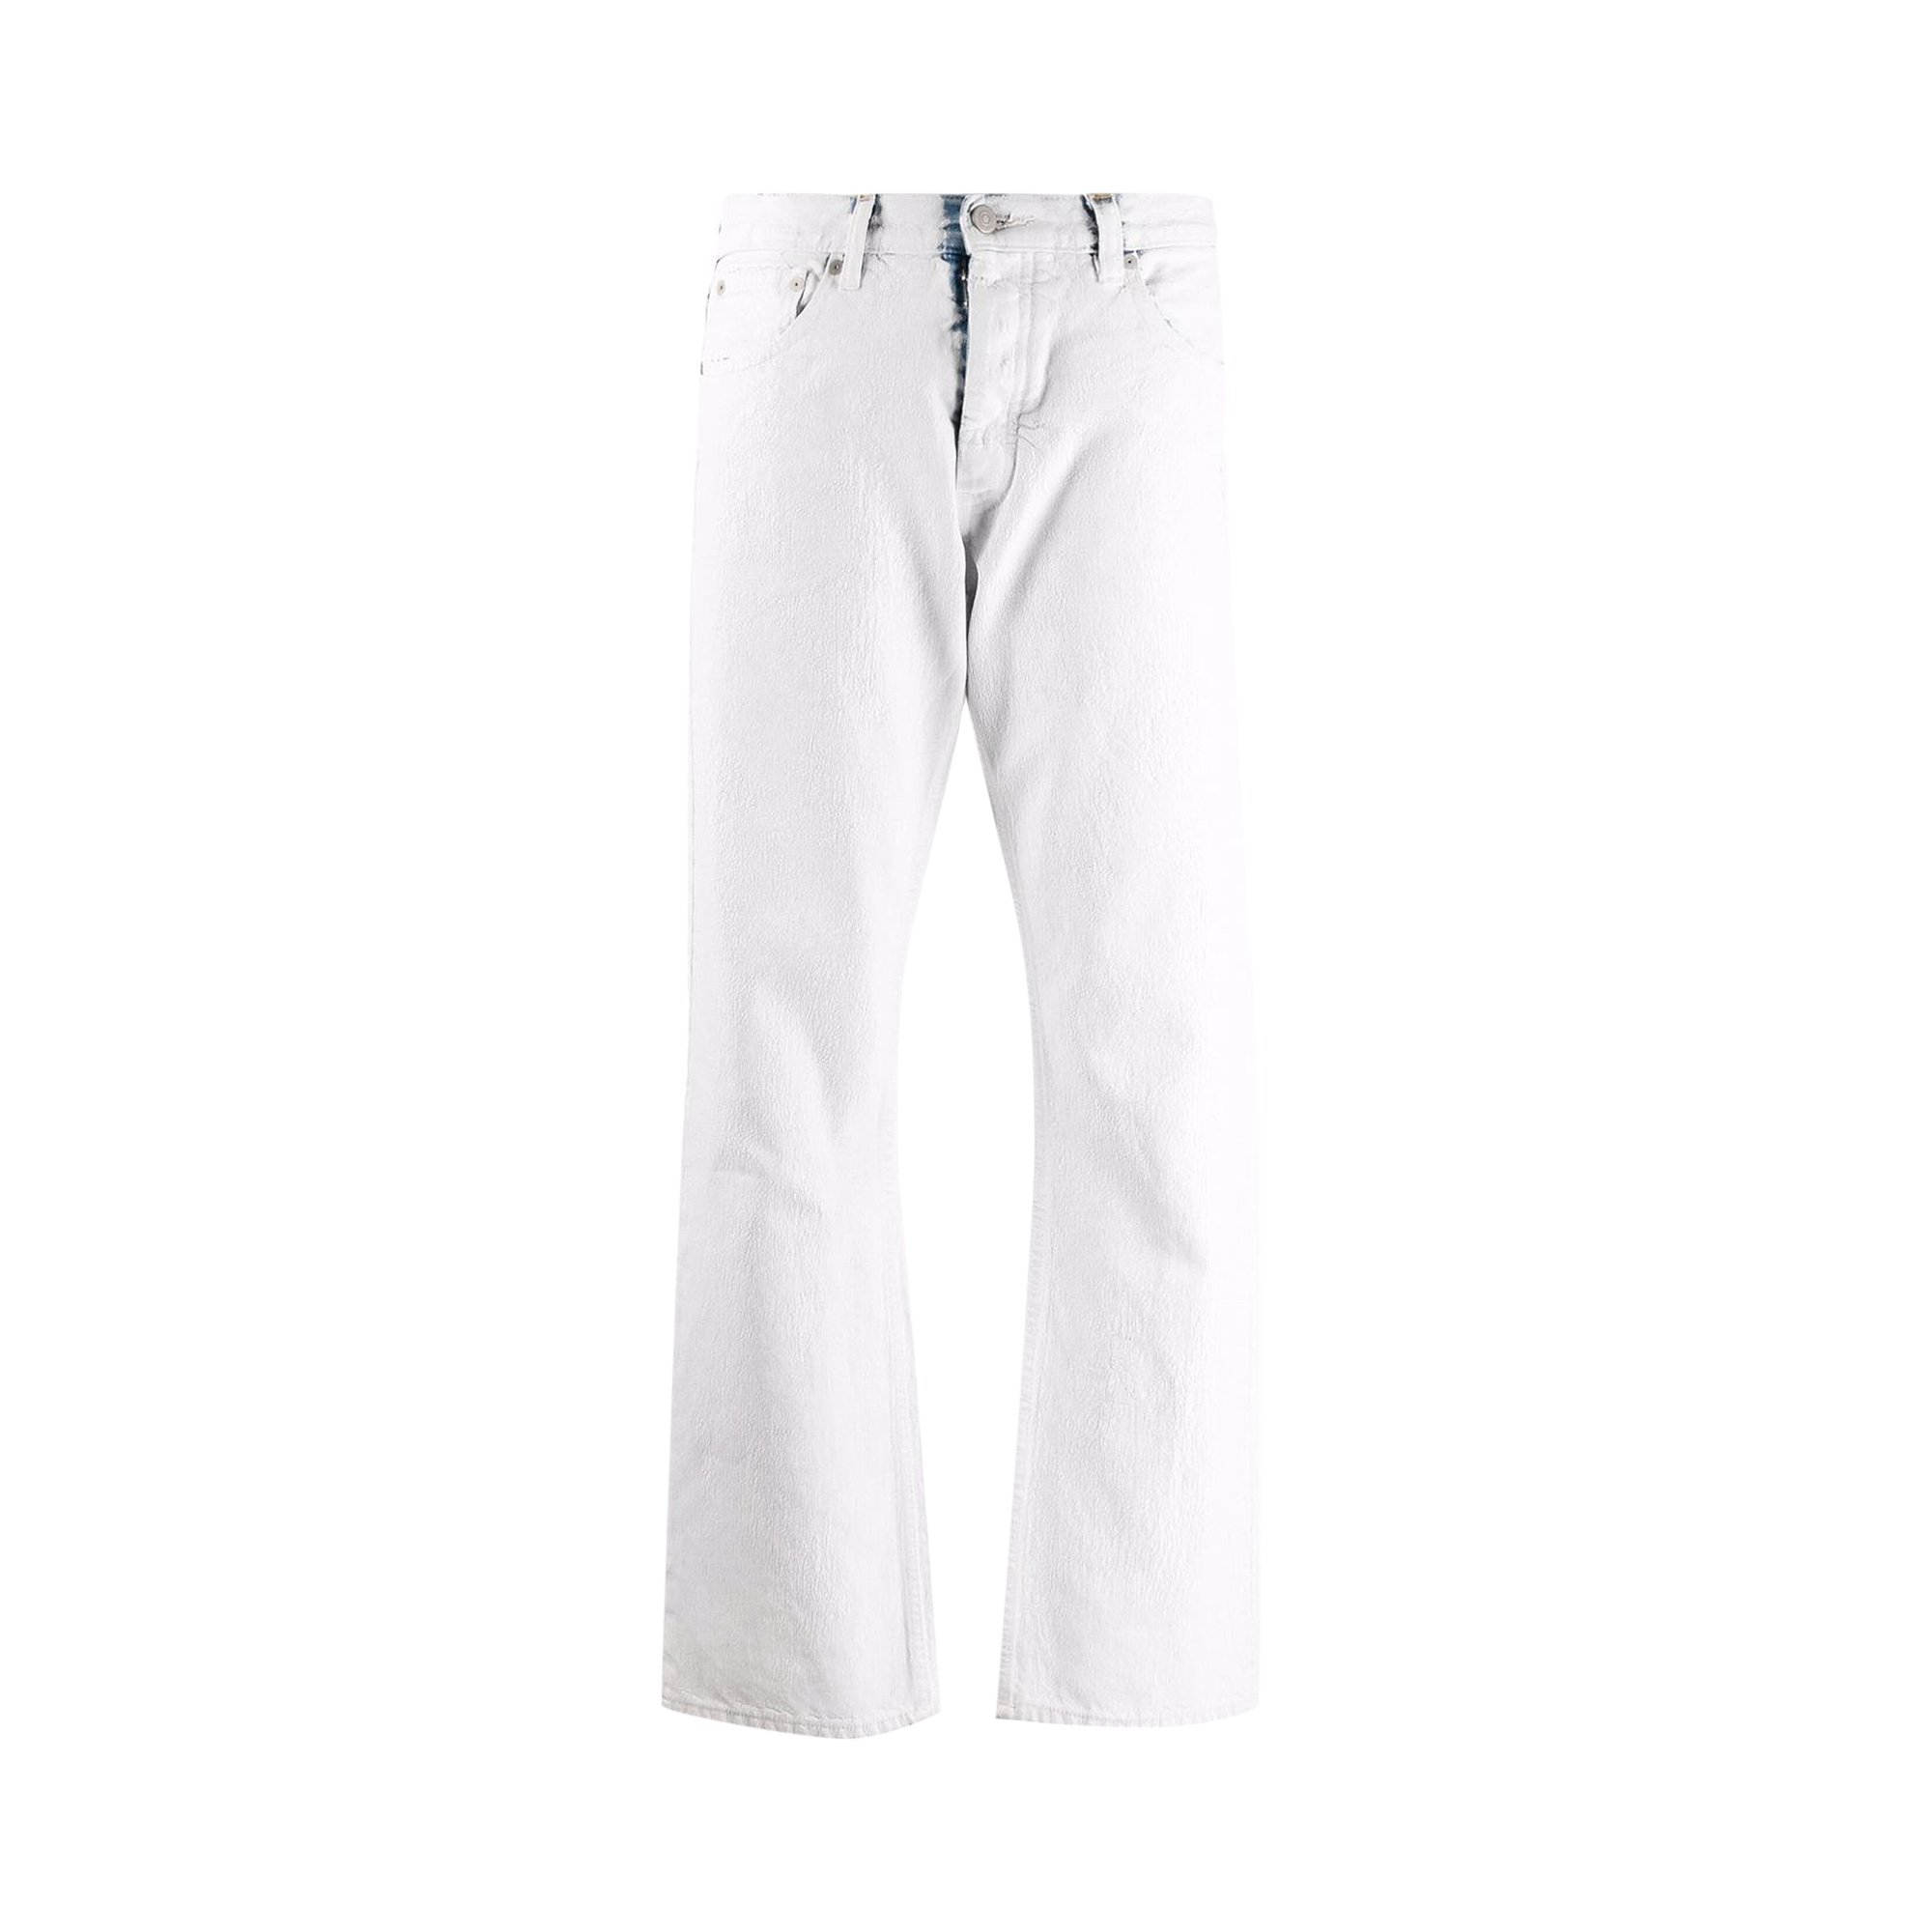 Maison Margiela Painted Jeans 'White' | GOAT